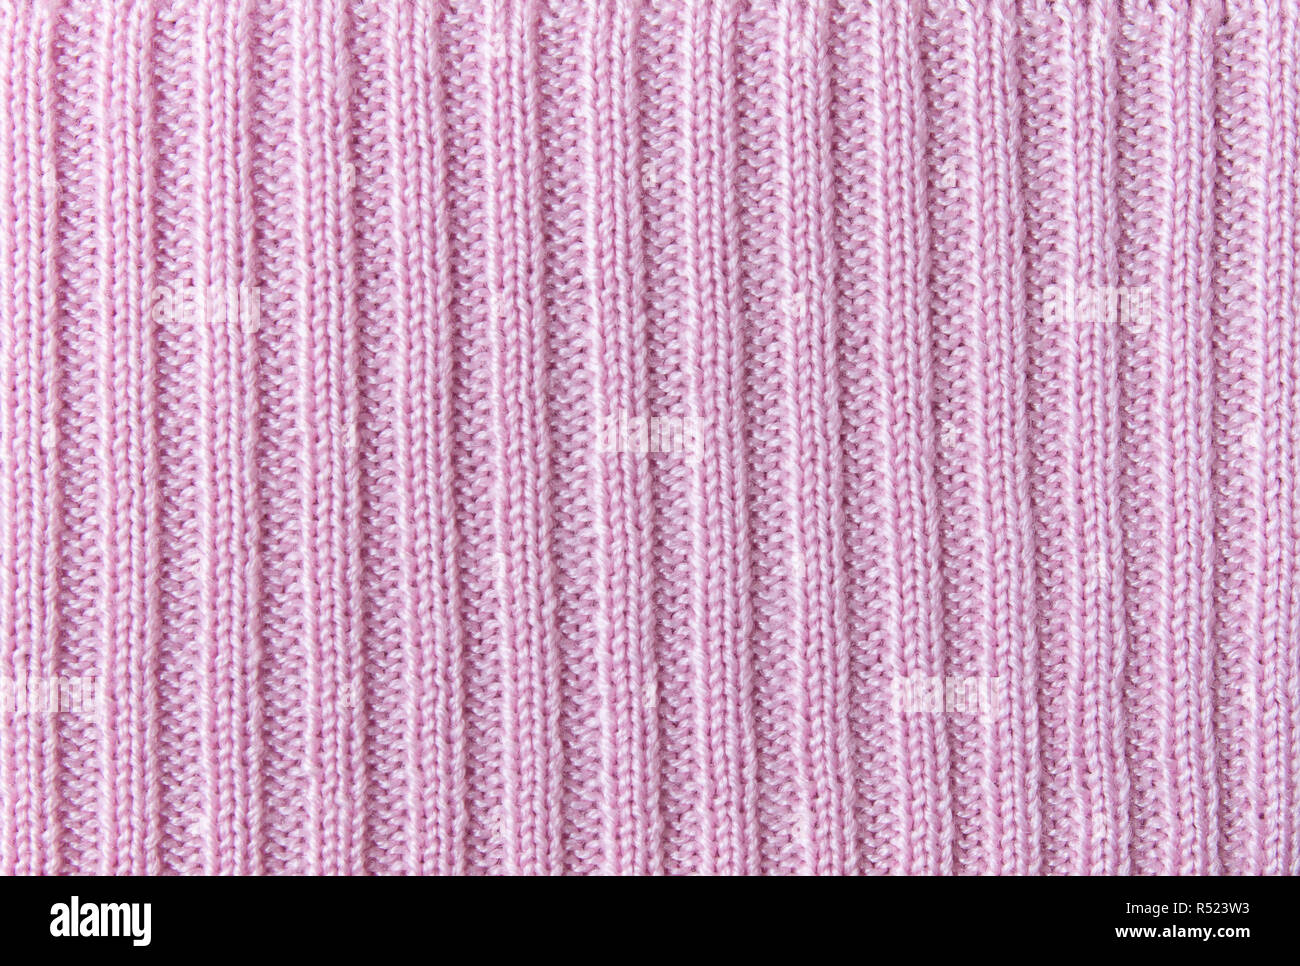 Rosa linea verticale di maglia o di tessuto a maglia Texture di sfondo di pattern Foto Stock